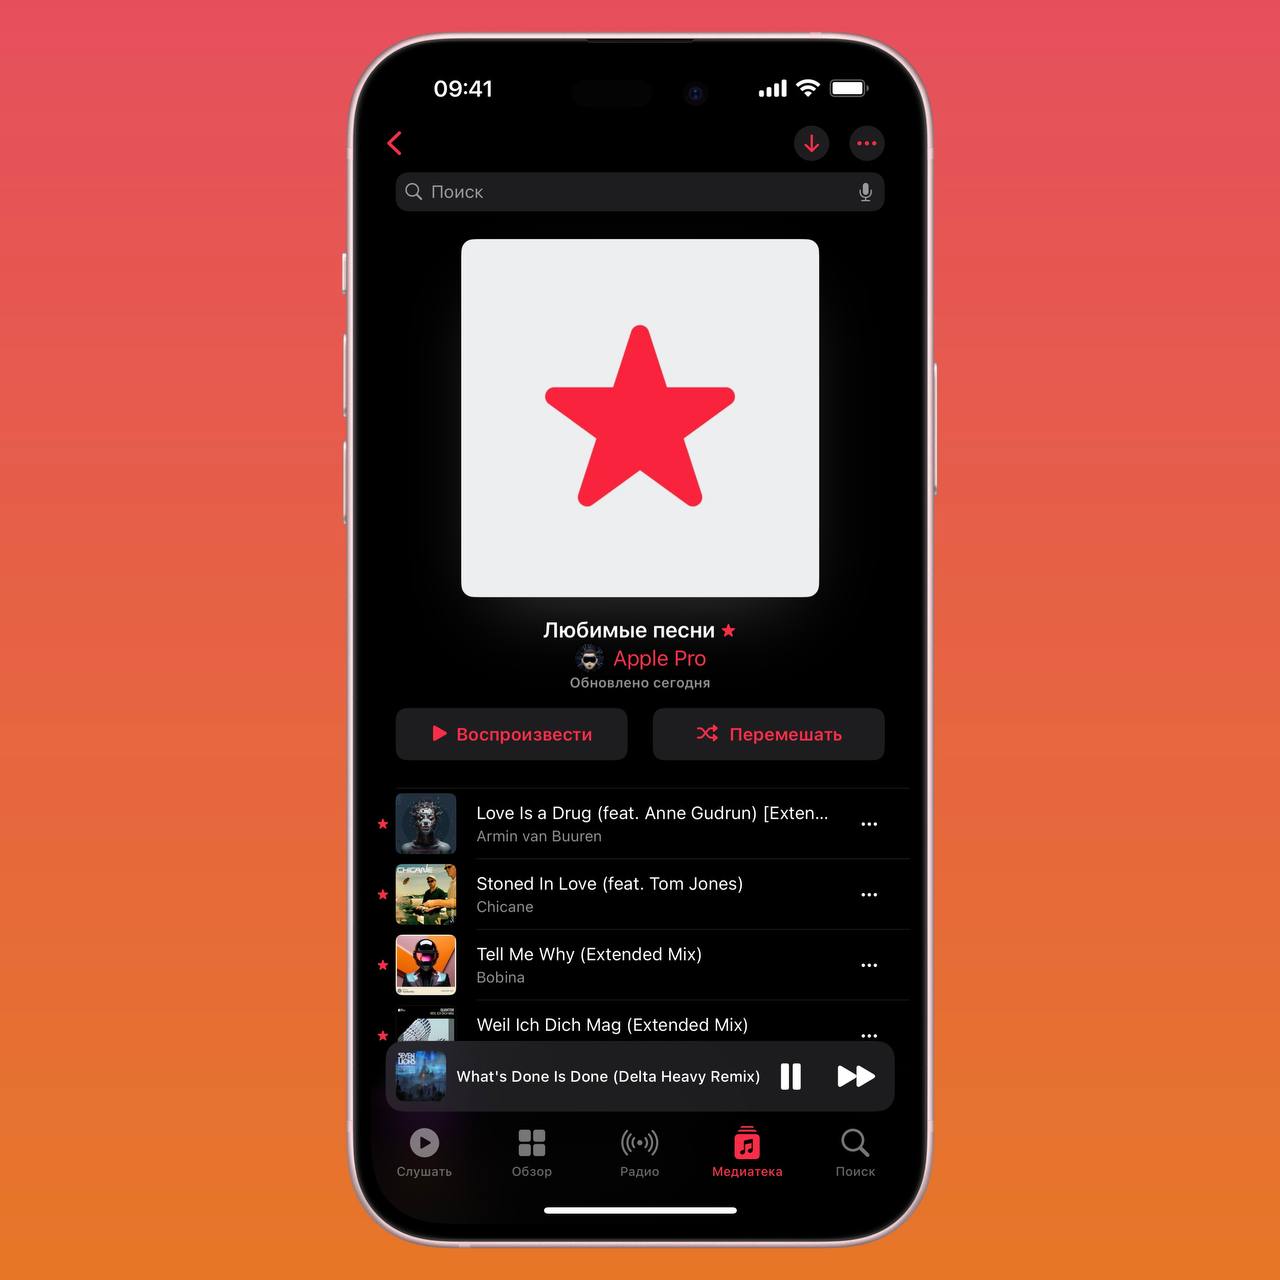 Новый плейлист Избранных для подписчиков Apple Music